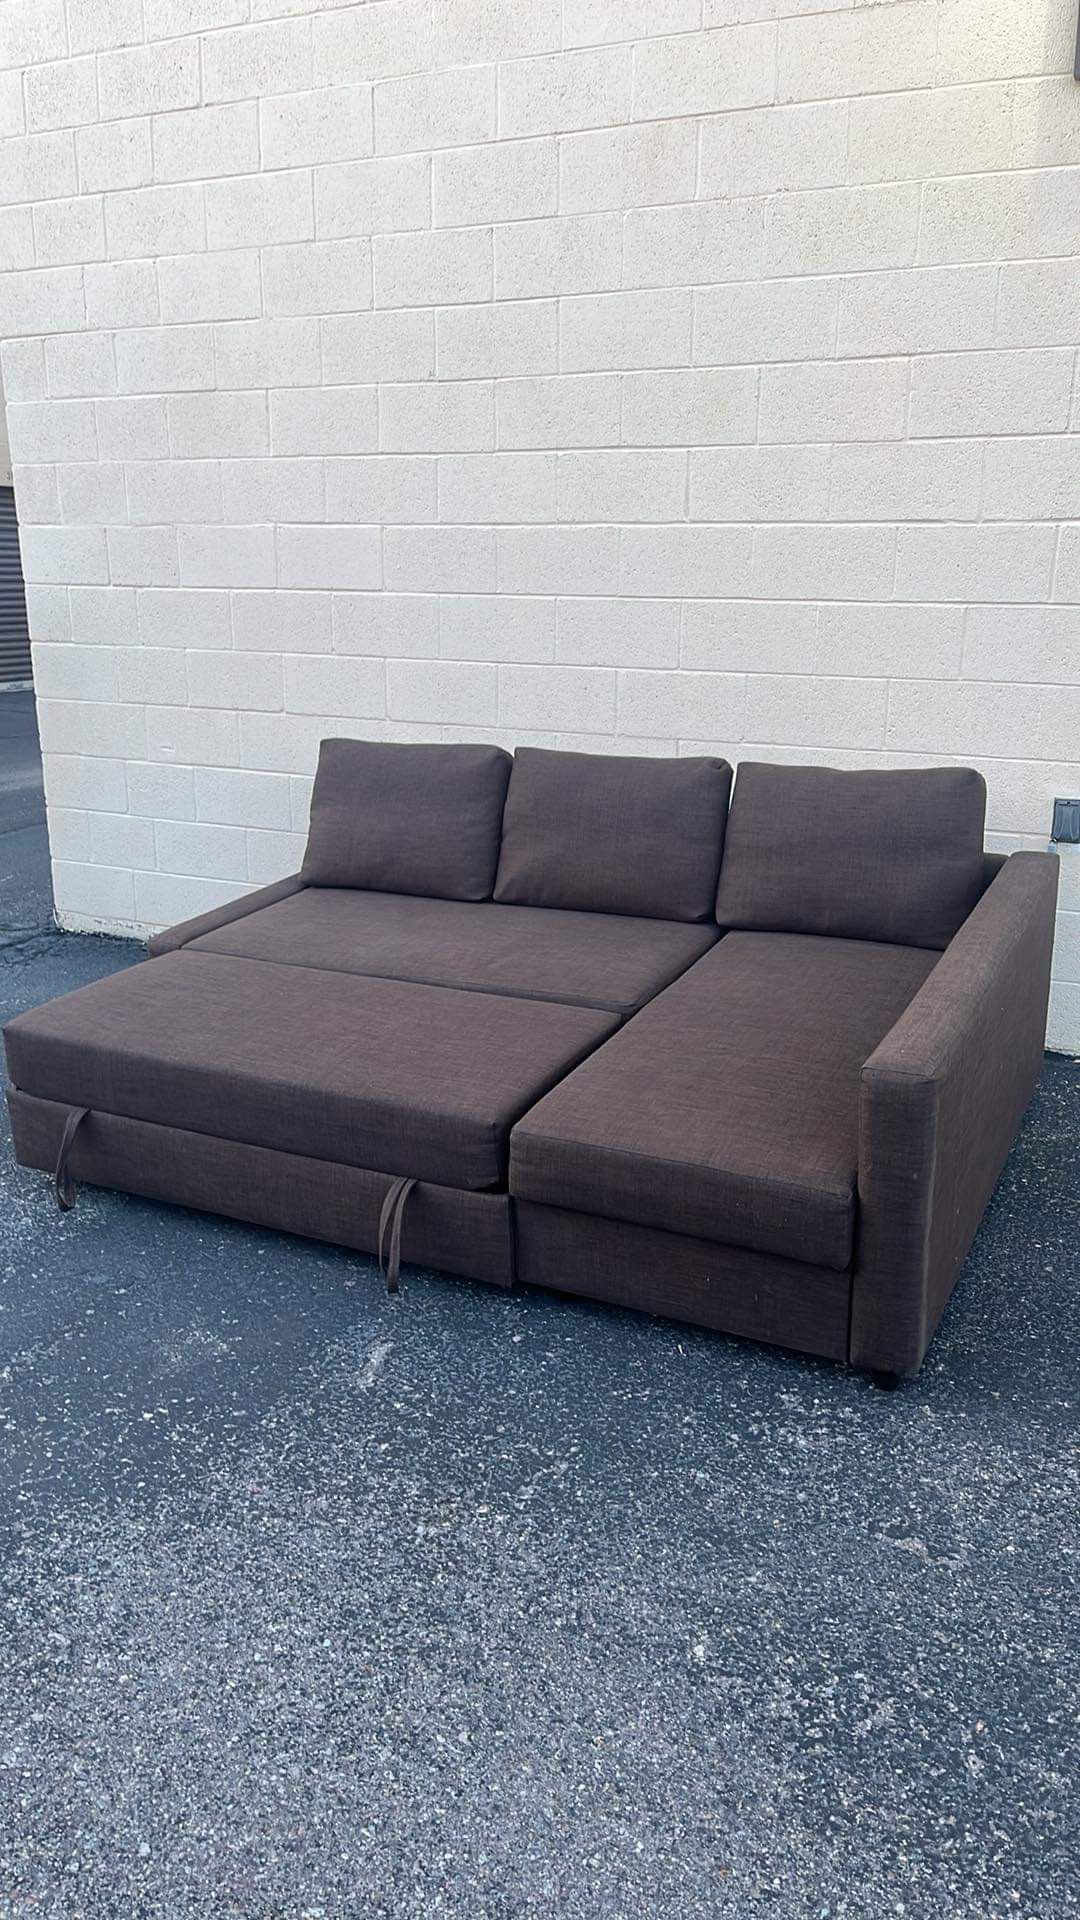 Sofa Cama 